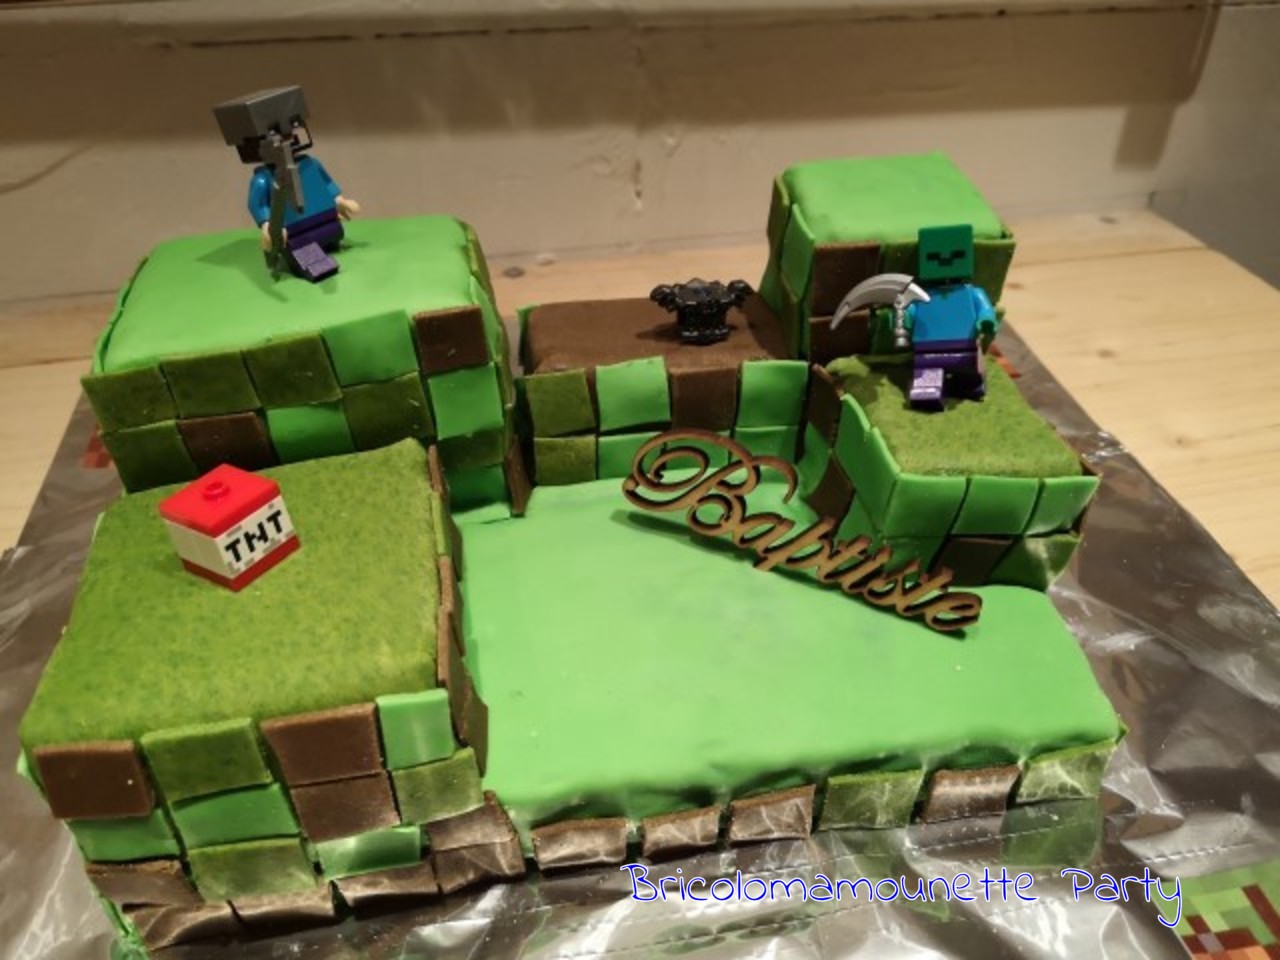 Minecraft sur gâteau monde des jeux 🍰